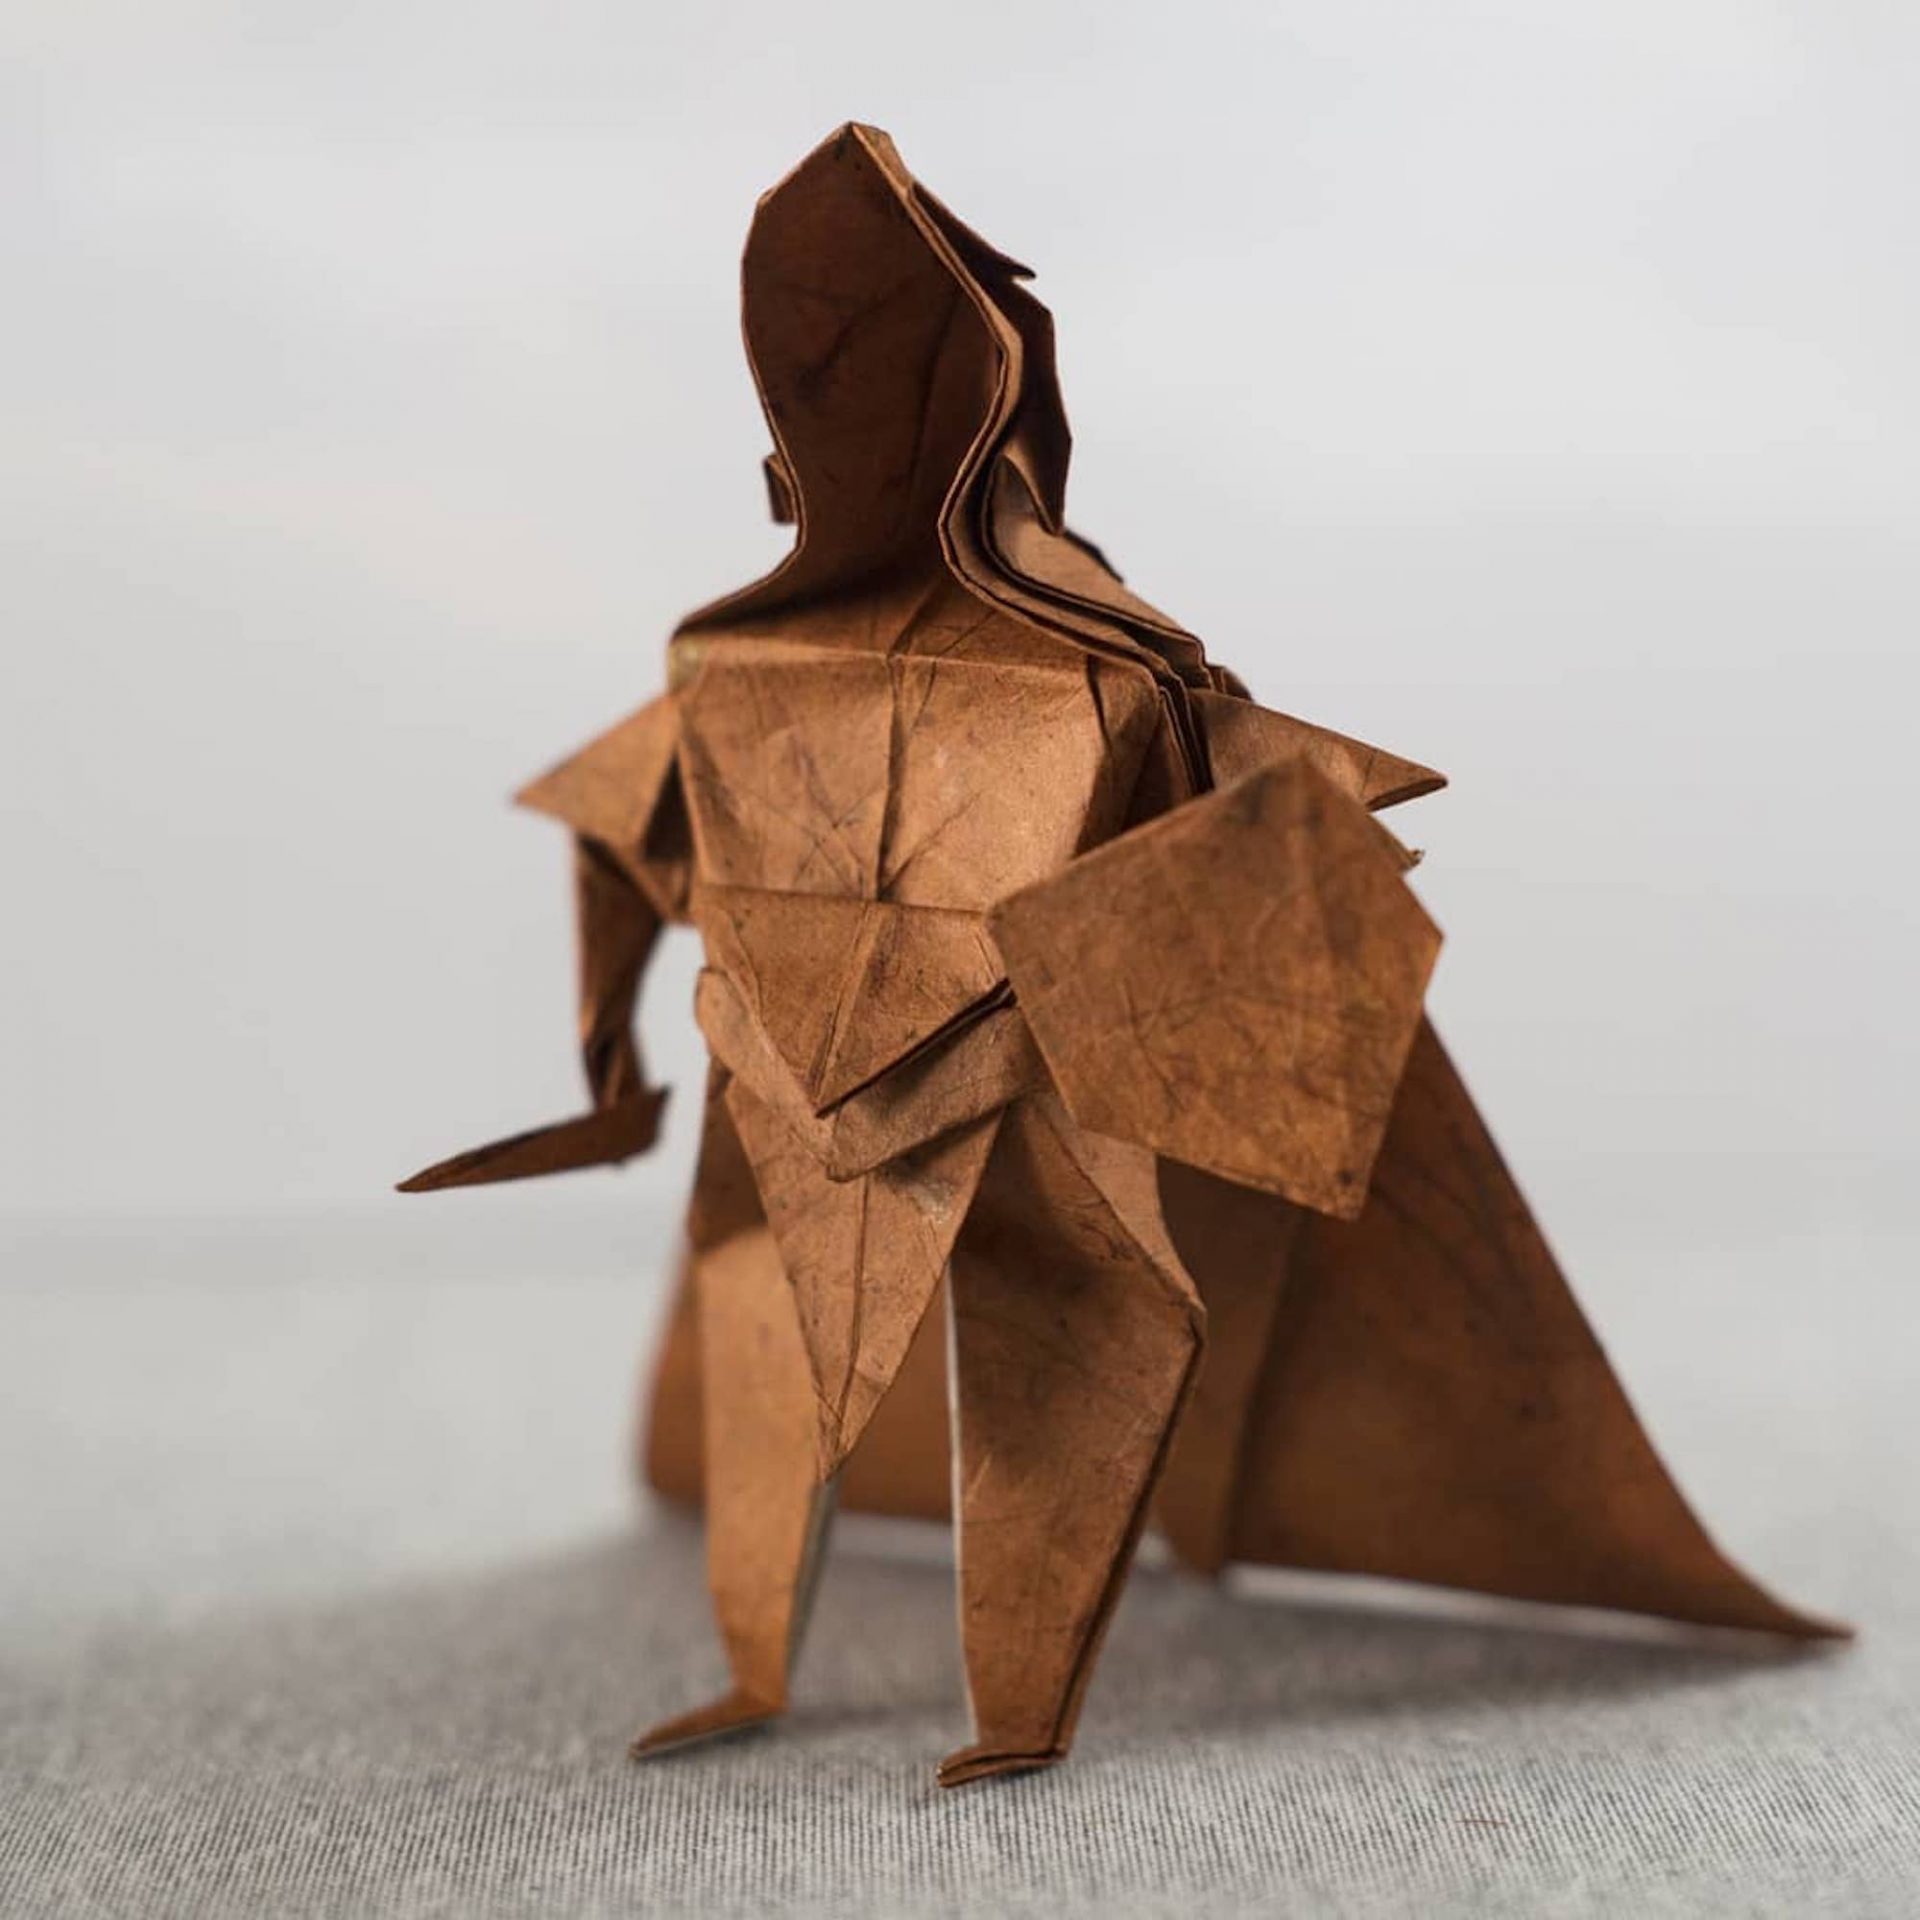 L'artiste Juho Könkkölä crée des origamis incroyables avec des feuilles d'un mètre de diamètre